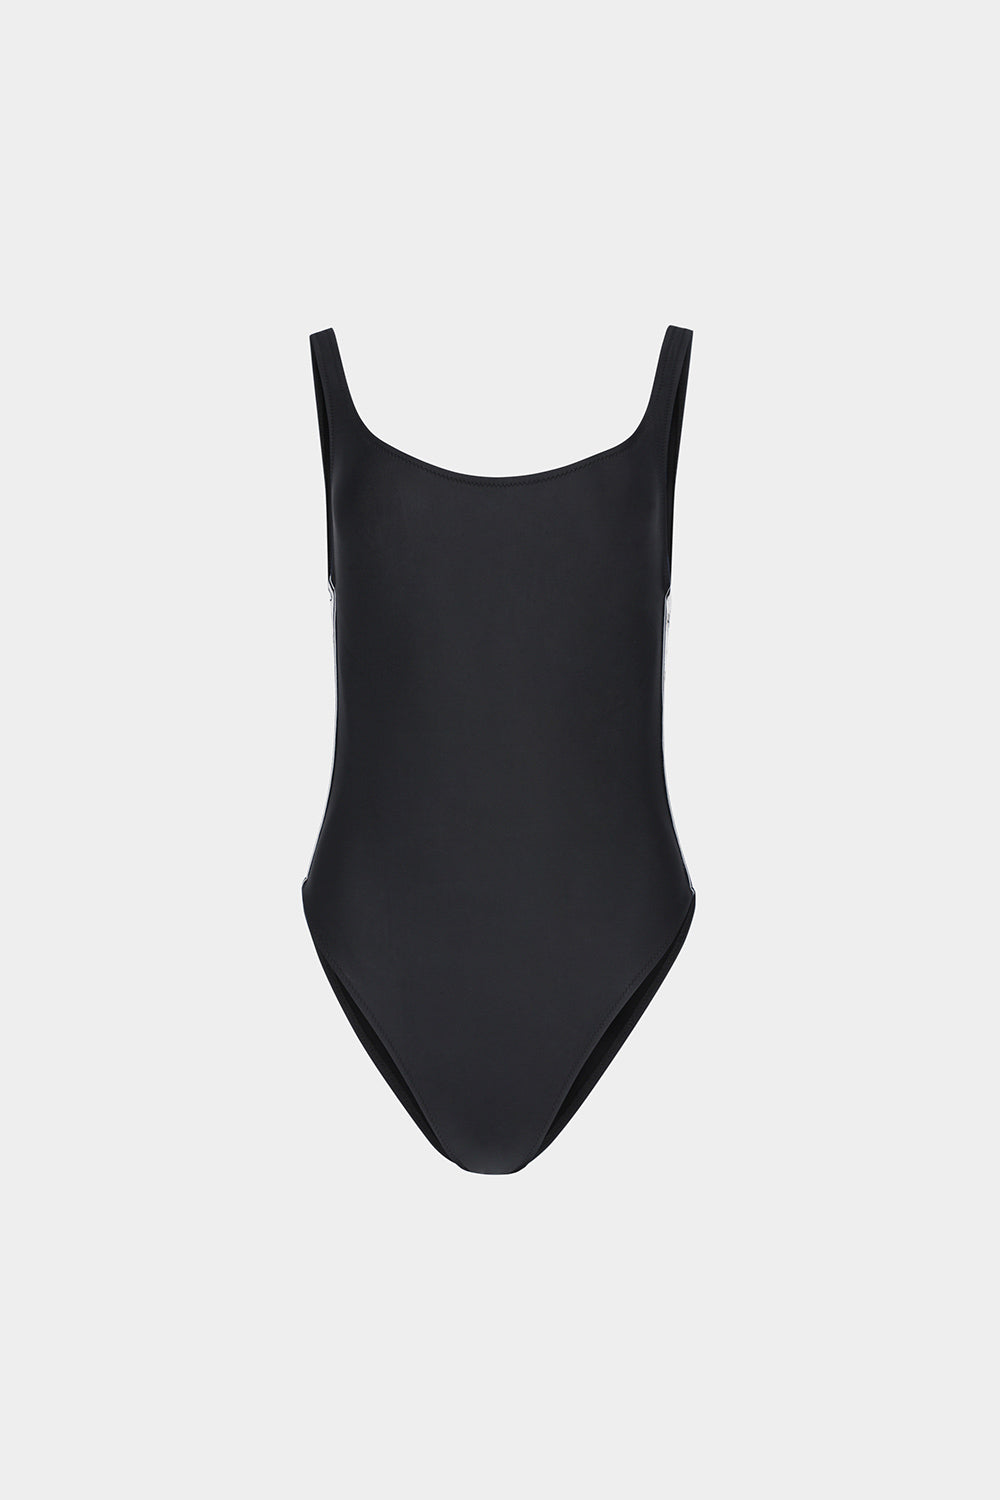 בגד ים שלם לנשים גב פתוח CHIARA FERRAGNI Vendome online | ונדום .